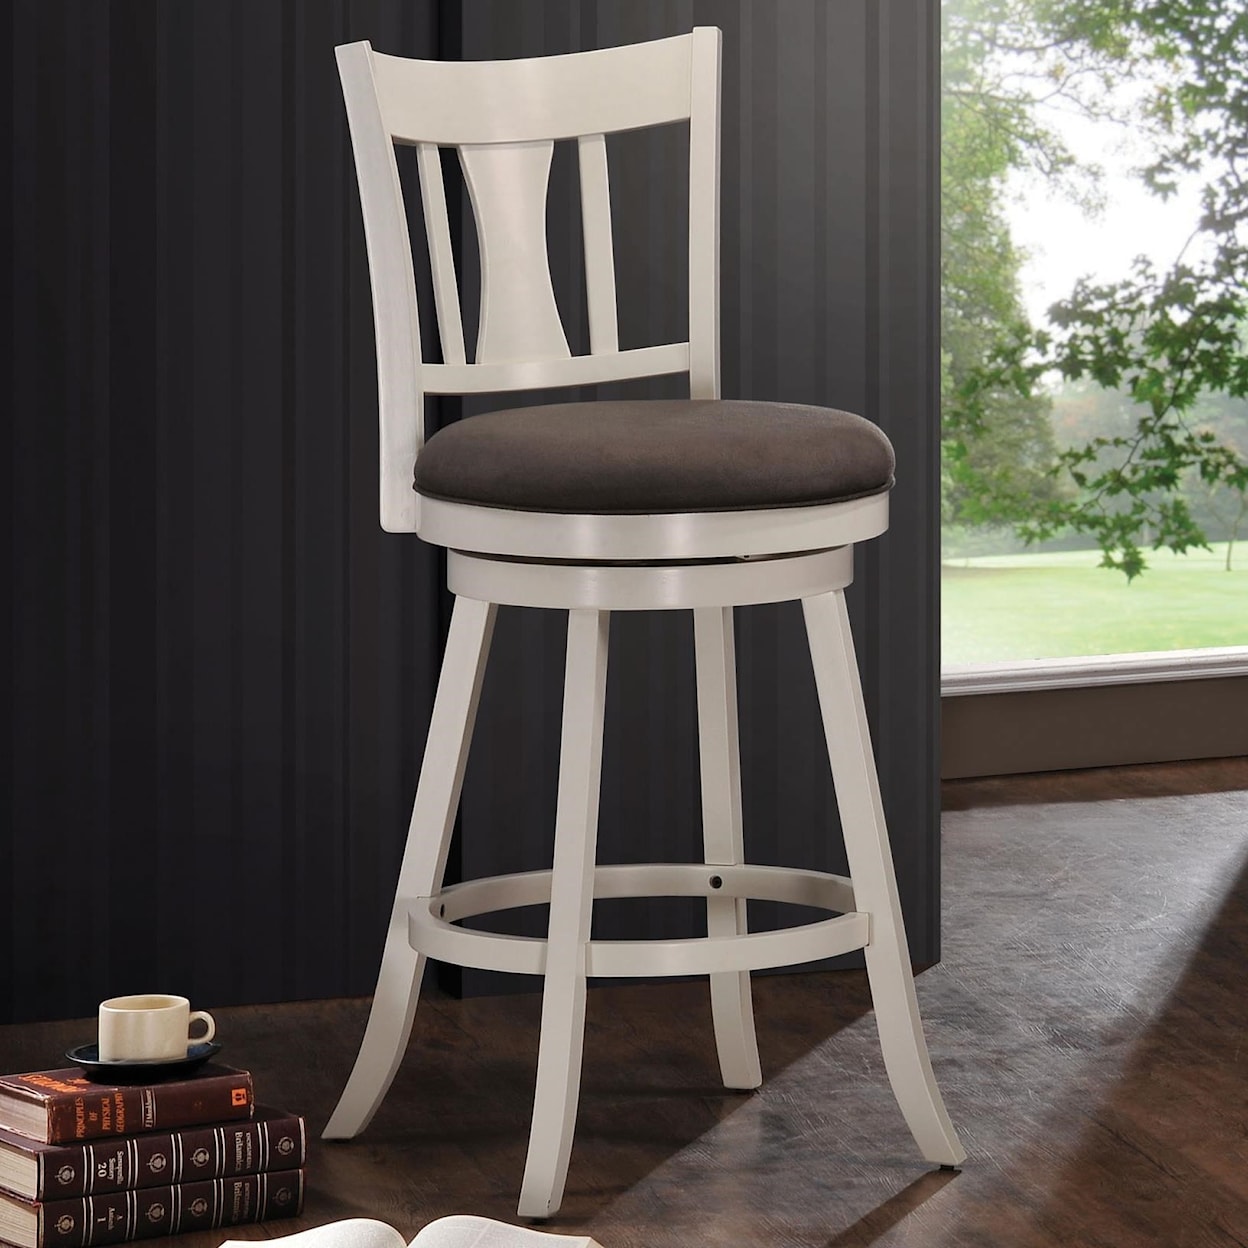 Acme Furniture Tabib Bar Chair